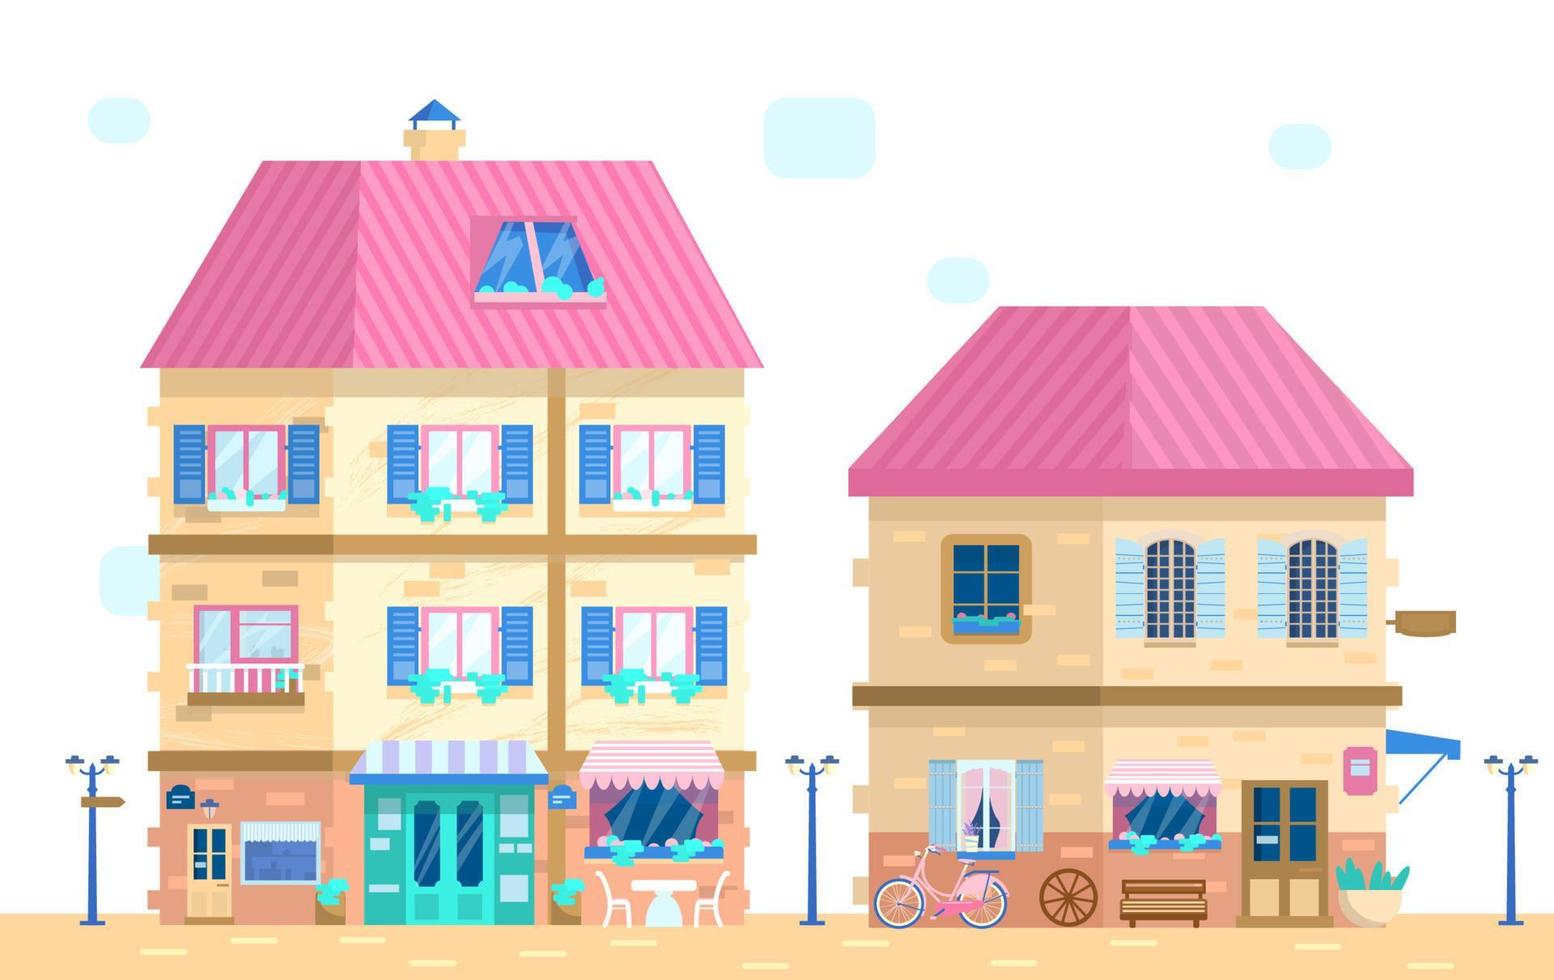 illustration vectorielle de jolie rue européenne dans un style plat. maisons aux fenêtres à volets avec fleurs et différents éléments de décoration. vecteur